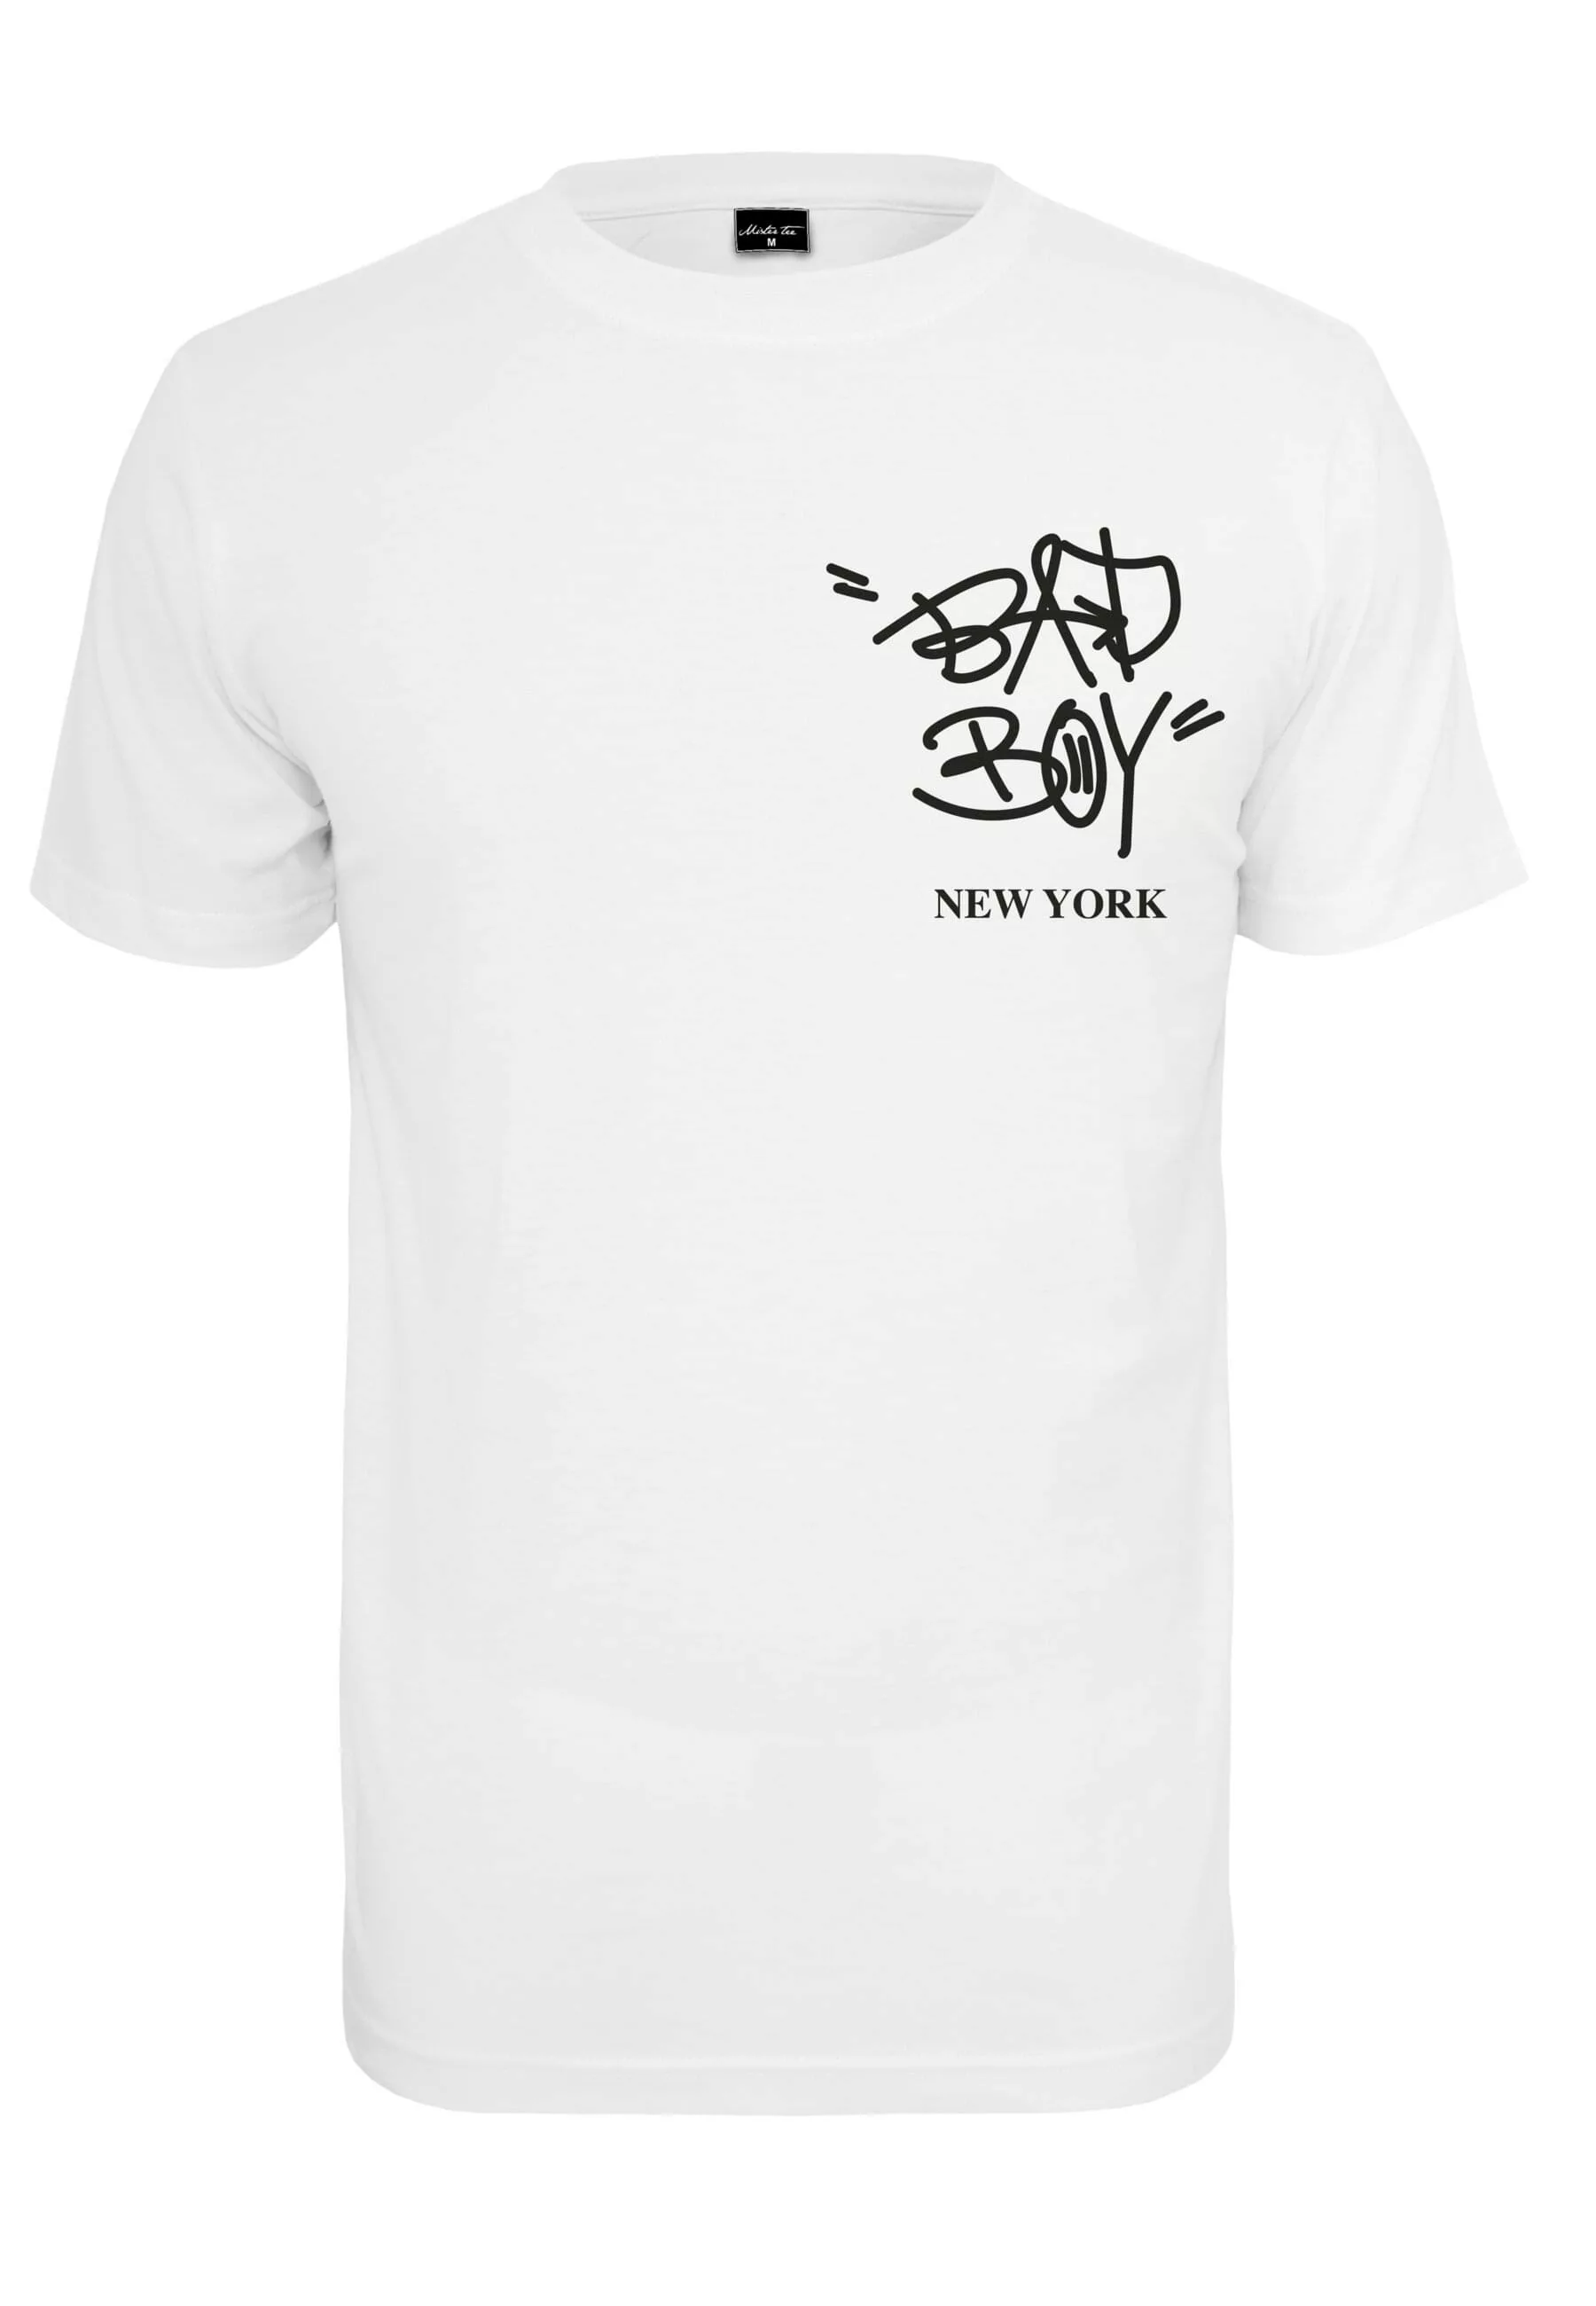 MisterTee T-Shirt "MisterTee Herren Bad Boy New York Tee" günstig online kaufen